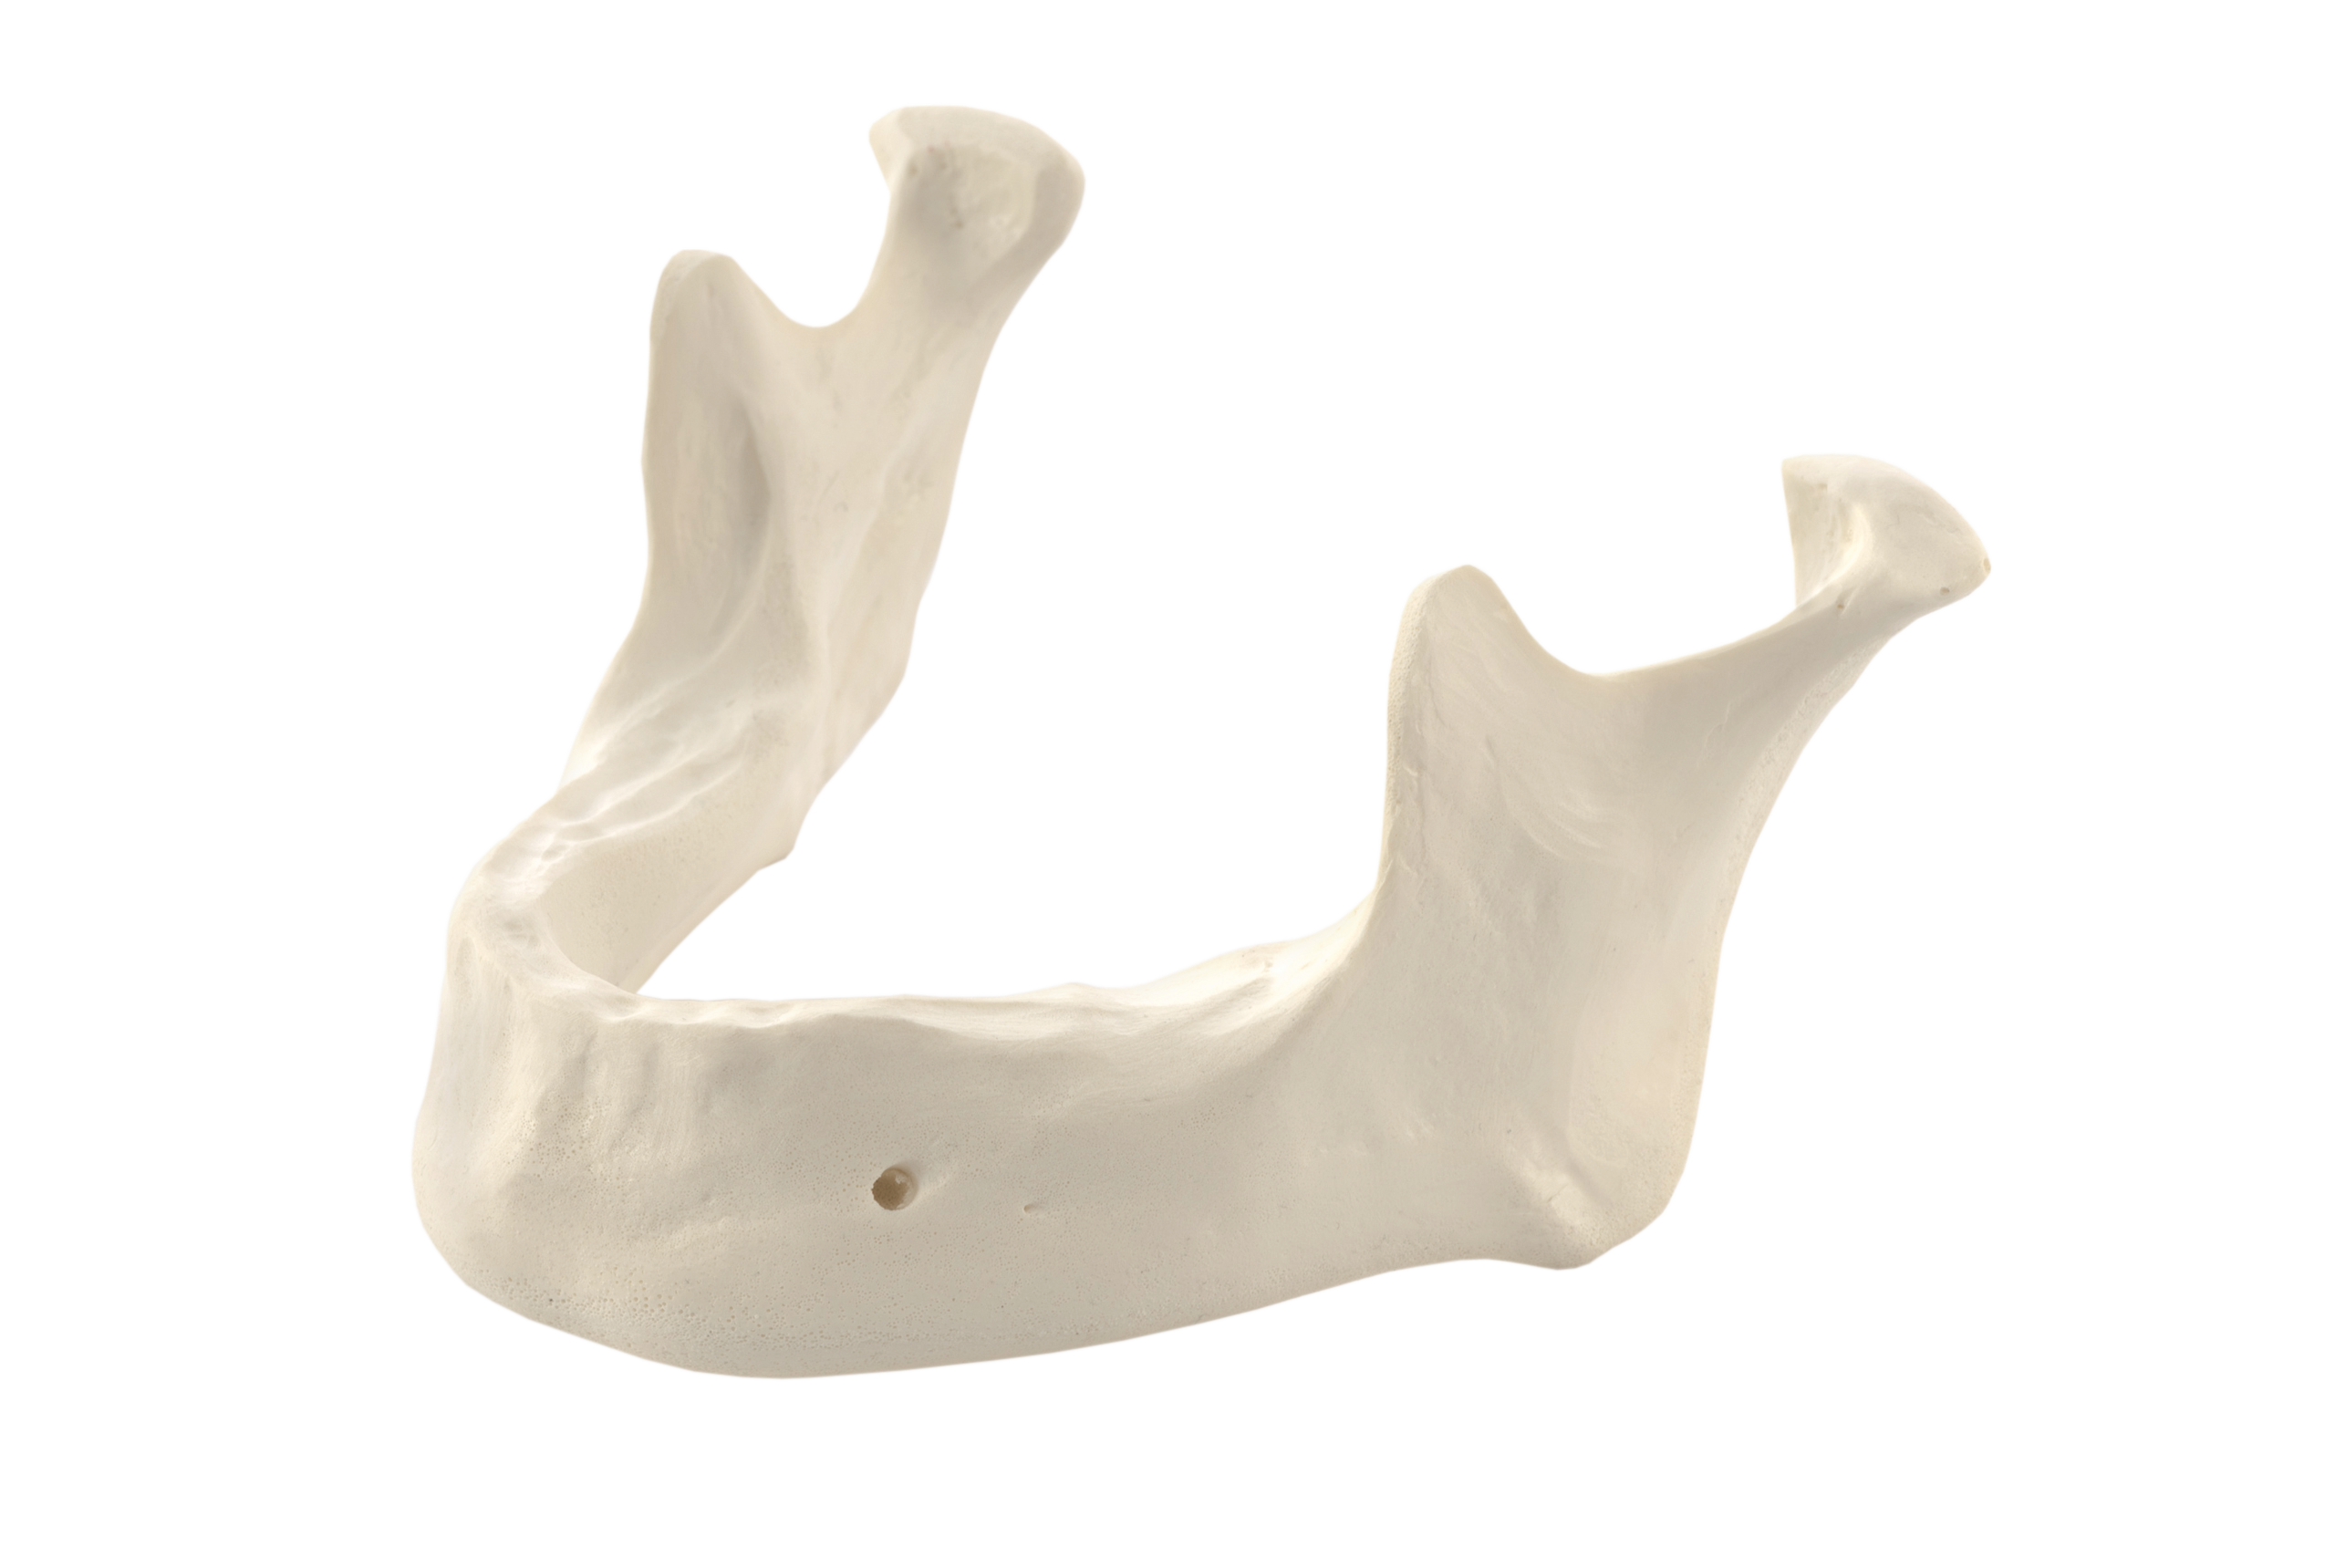 Mandibula A1 bone